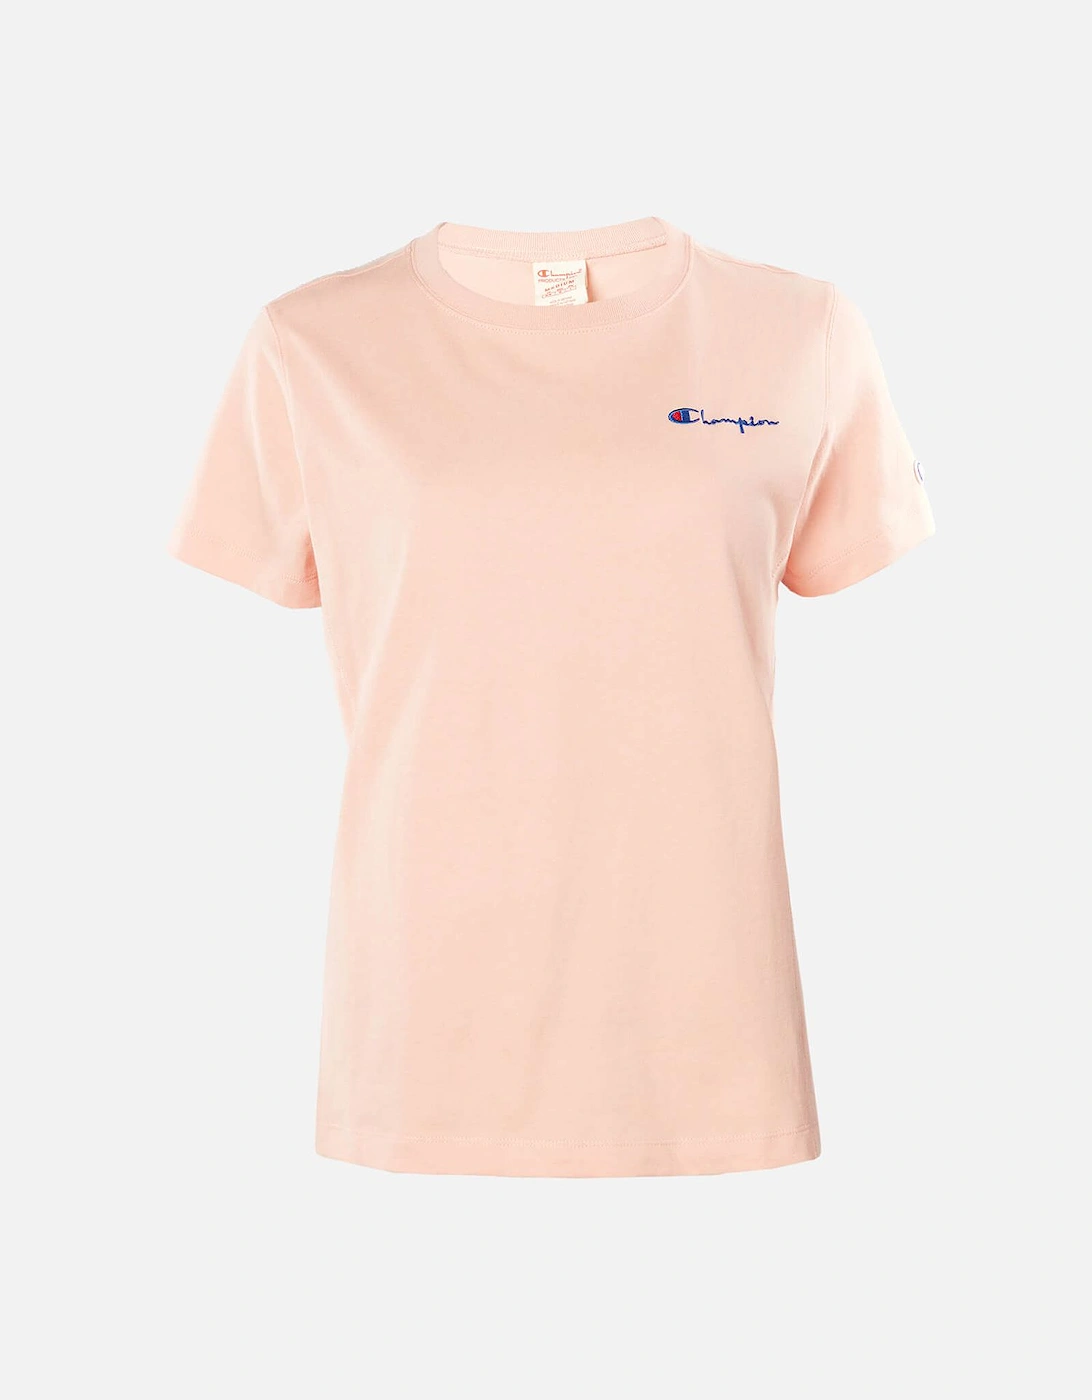 Women's Small Script T-Shirt - Pink - - Home - Women's Small Script T-Shirt - Pink